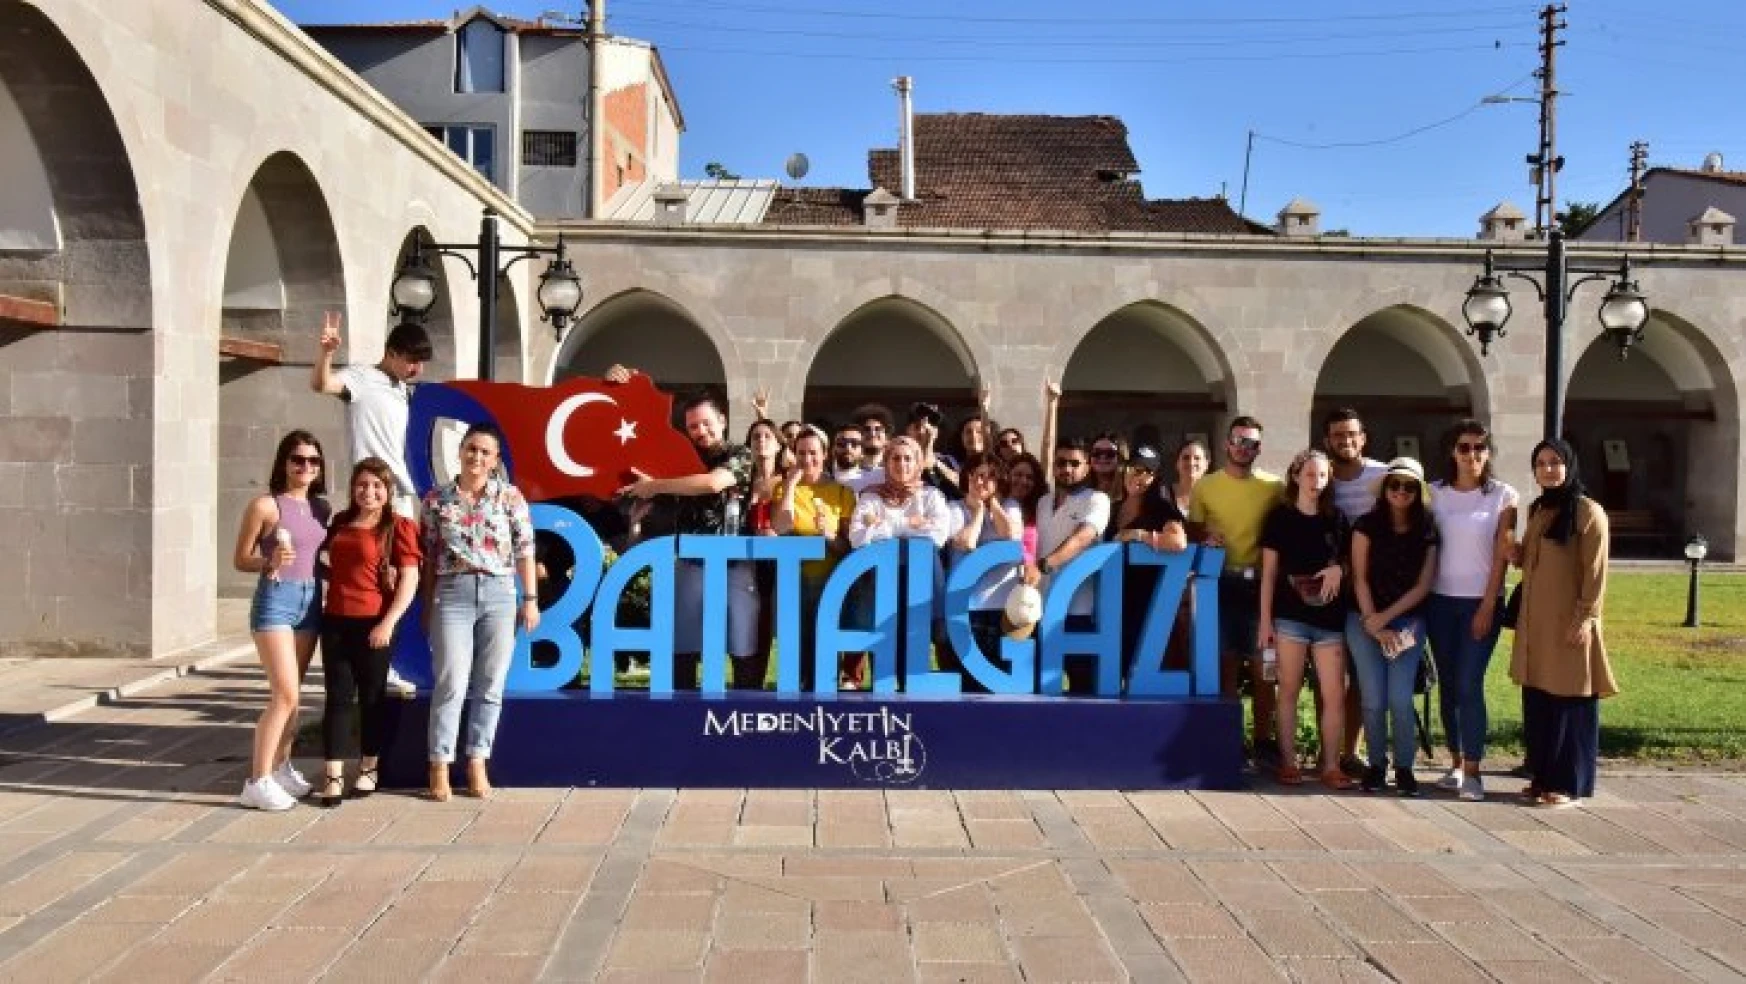 Erasmuslu Öğrenciler Battalgazi'ye Hayran Kaldı